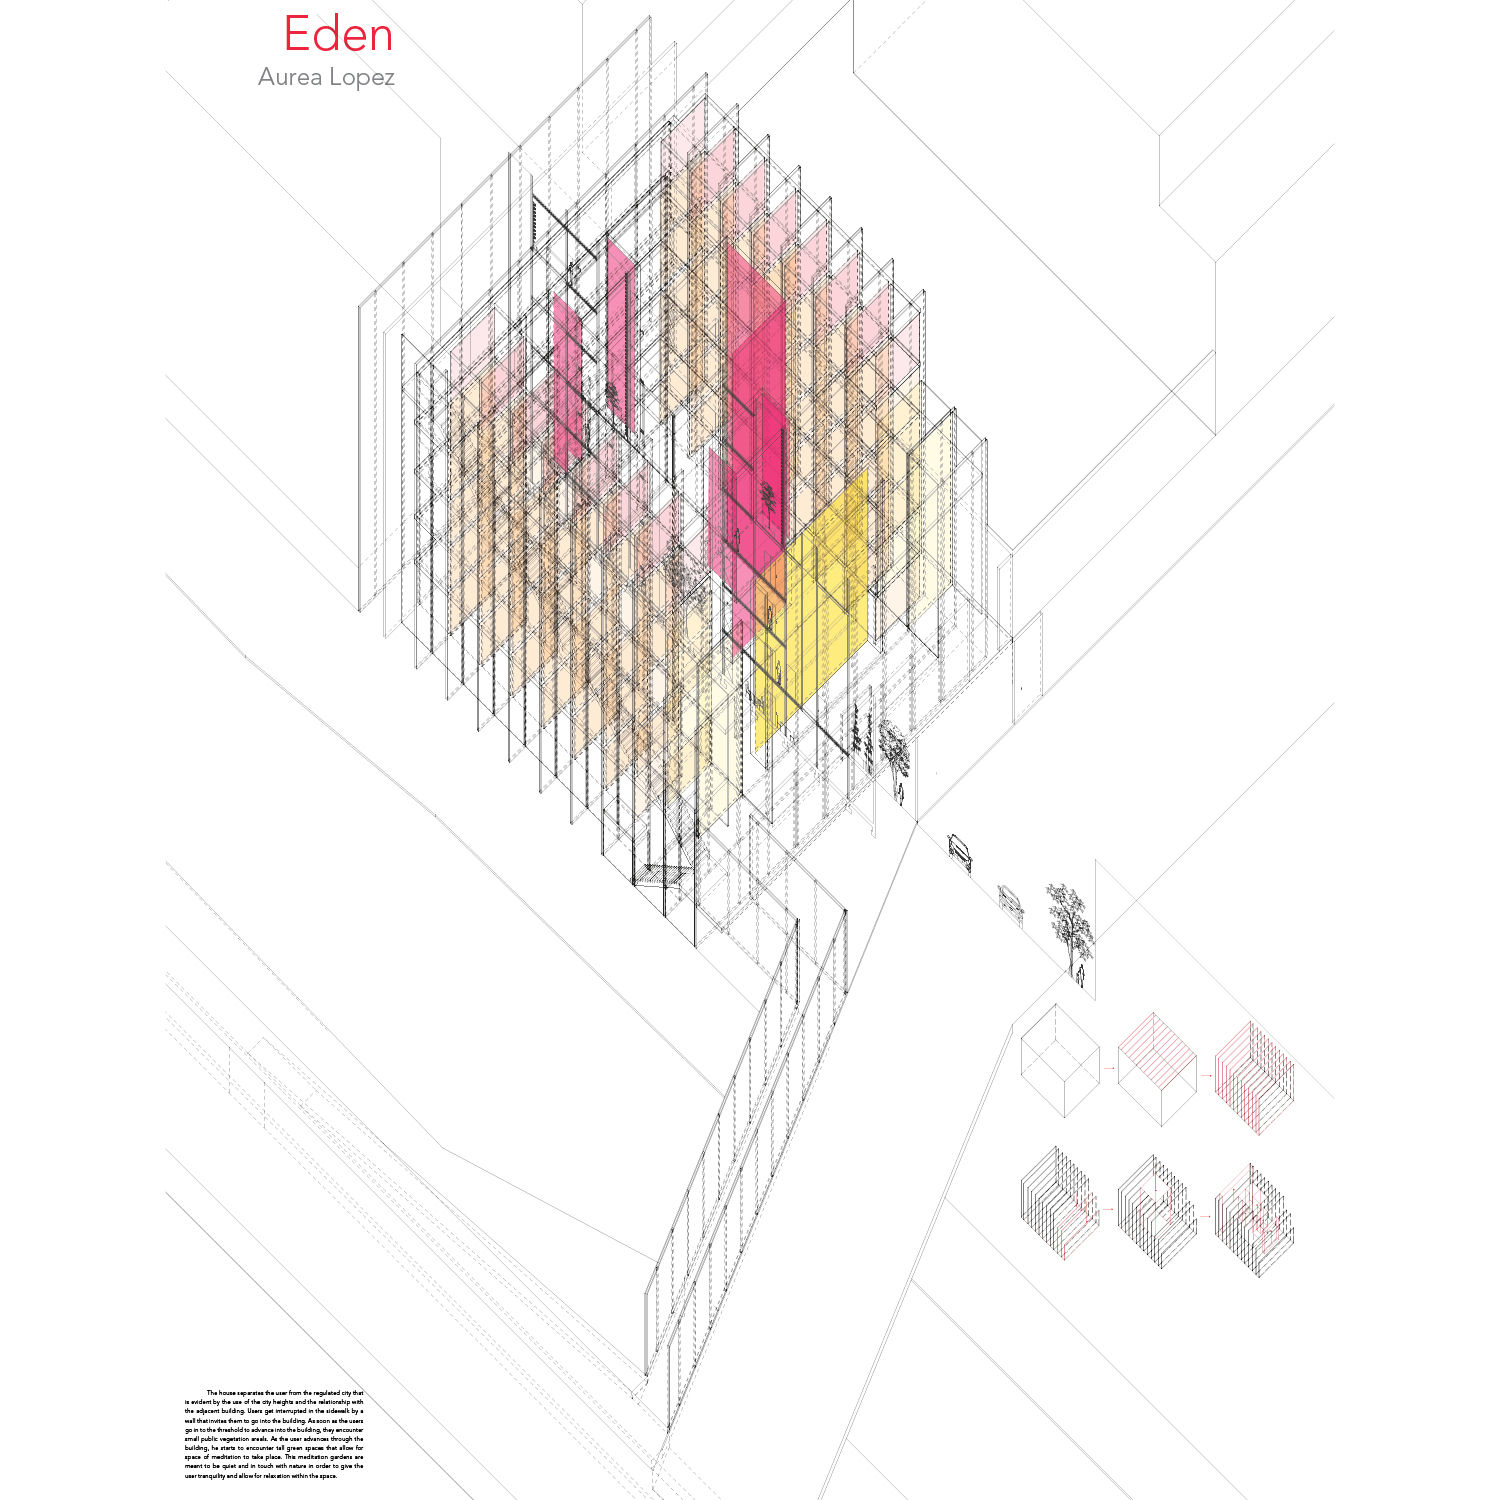 Eden by Aurea Lopez. Large-scale cube structure.